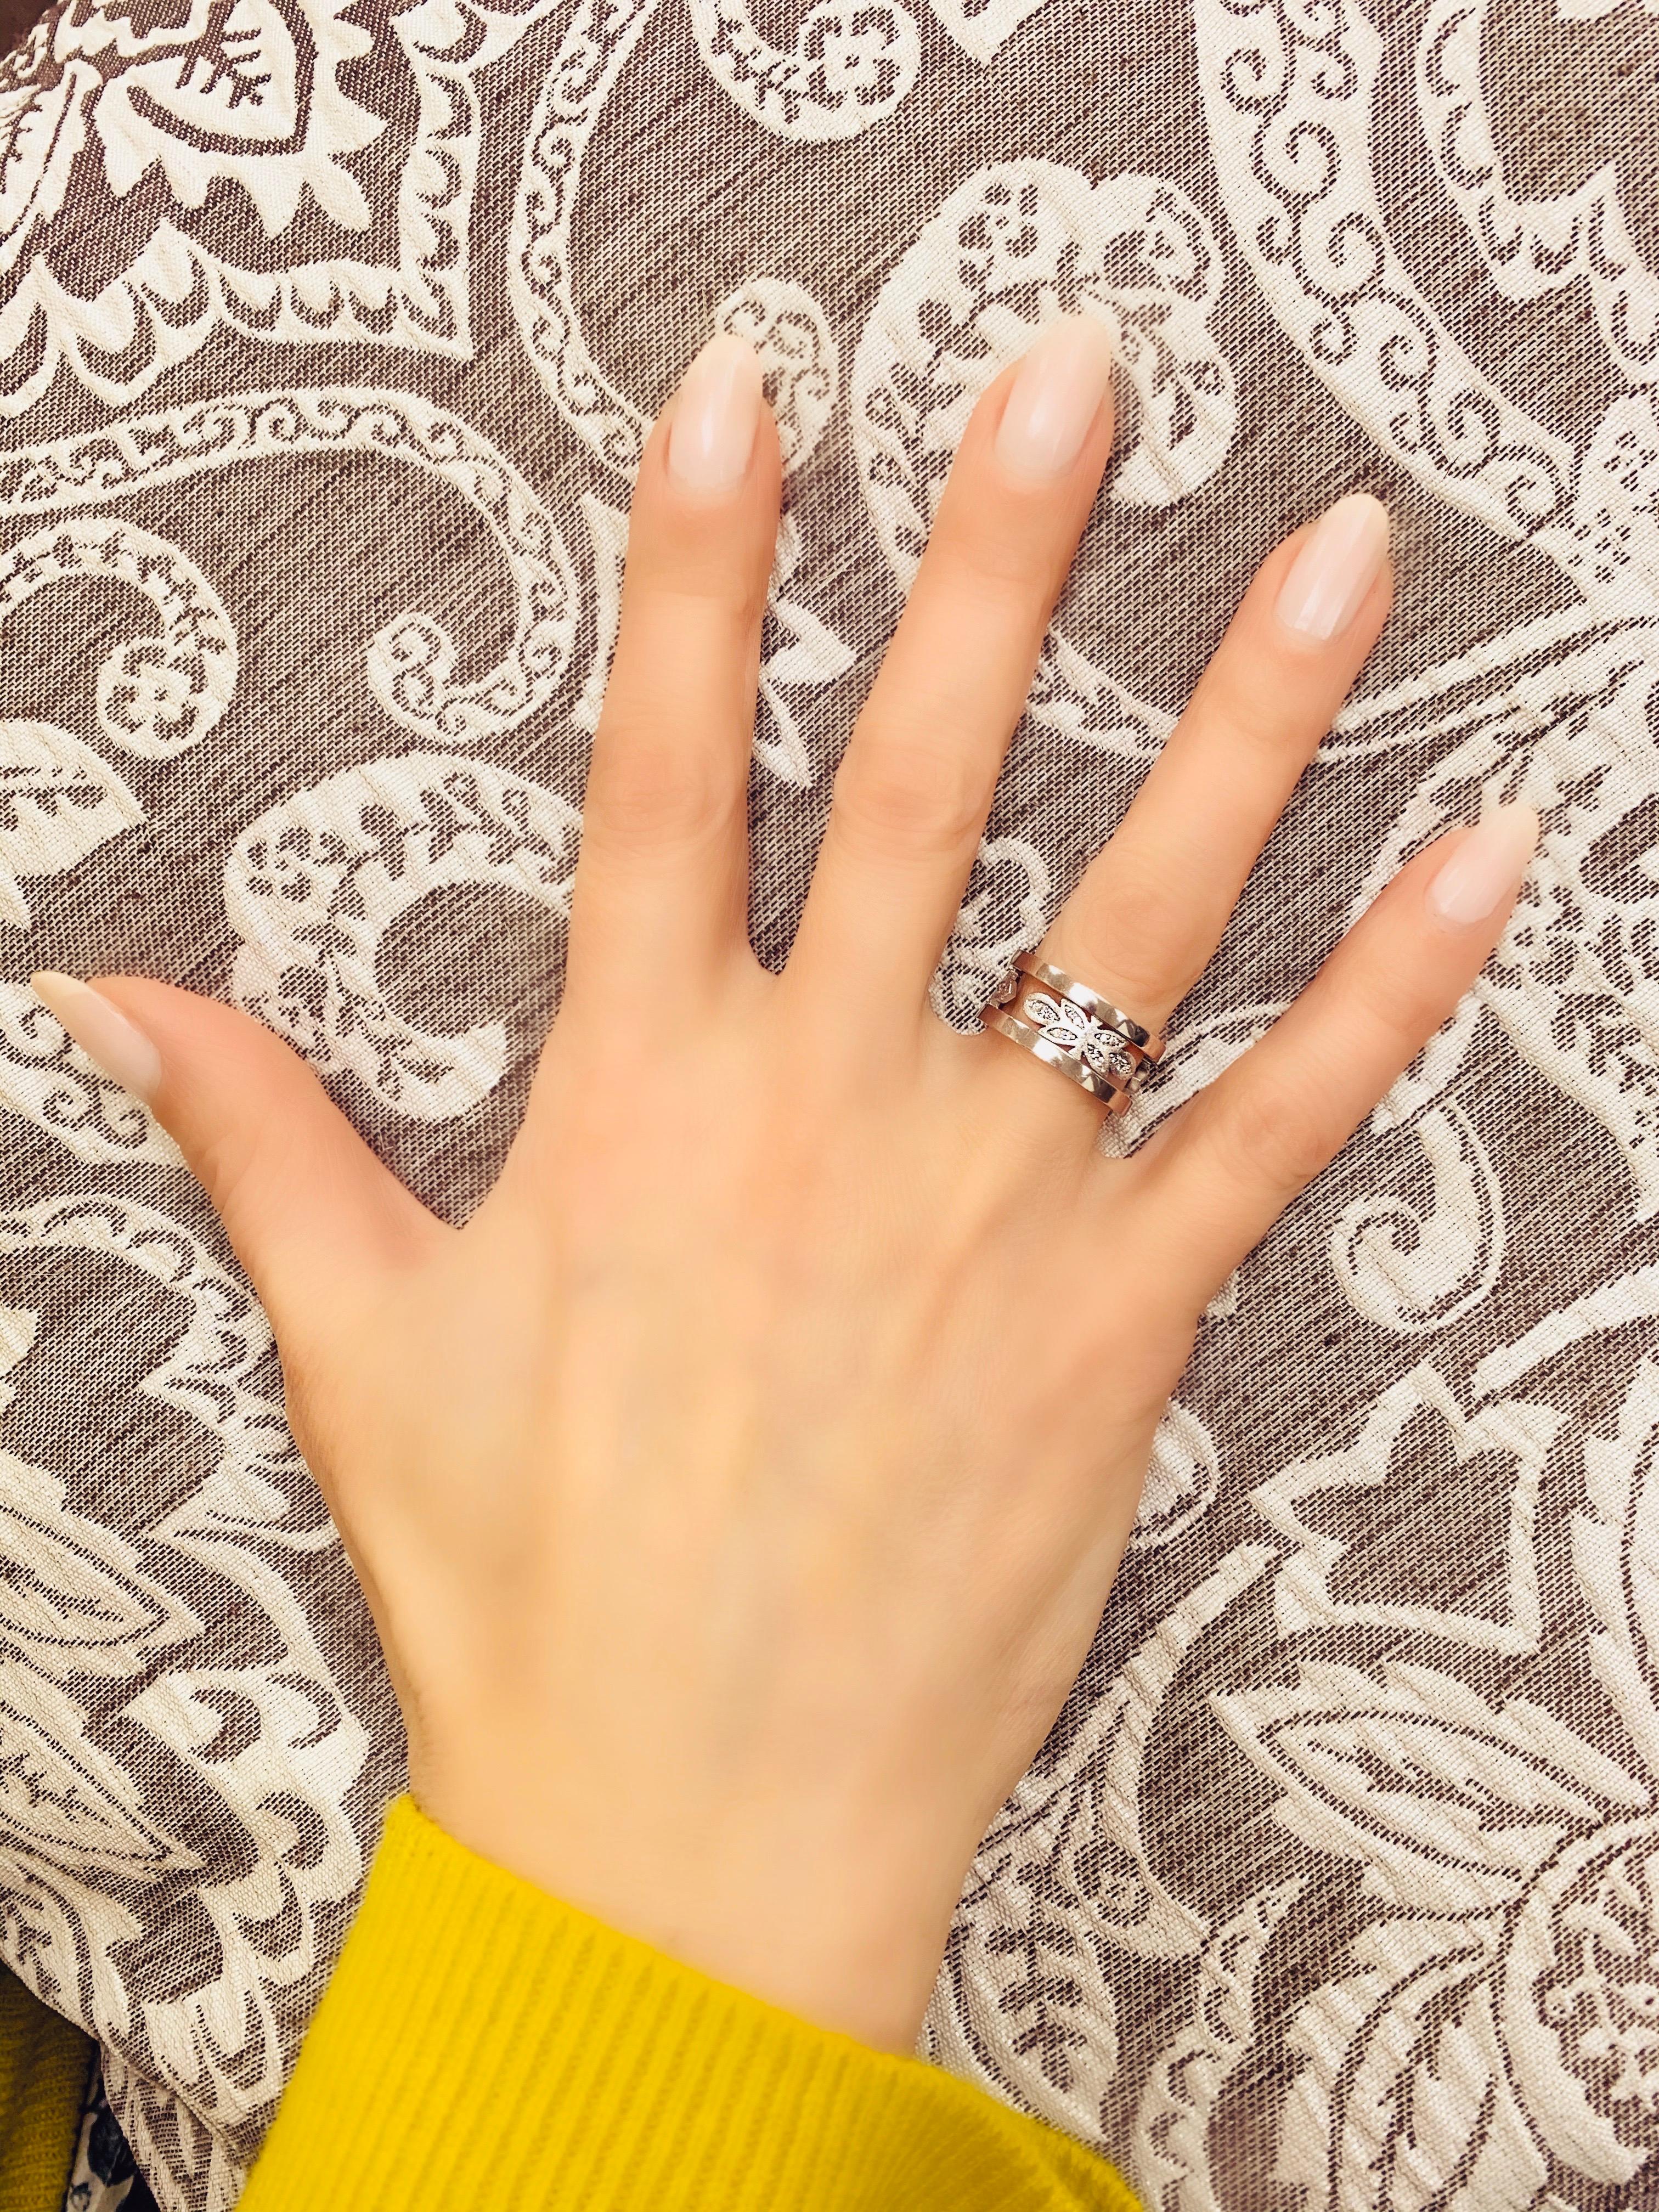 Alex Soldier Diamantband aus 18 Karat Weißgold mit charakteristischer Metallarbeit. Handgefertigt mit Liebe in NYC aus verantwortungsvoll beschafften Materialien. Weiße Diamanten: 42 Steine, Karatgewicht insgesamt: 0,3 ct. Ringgröße: 6,5. Die